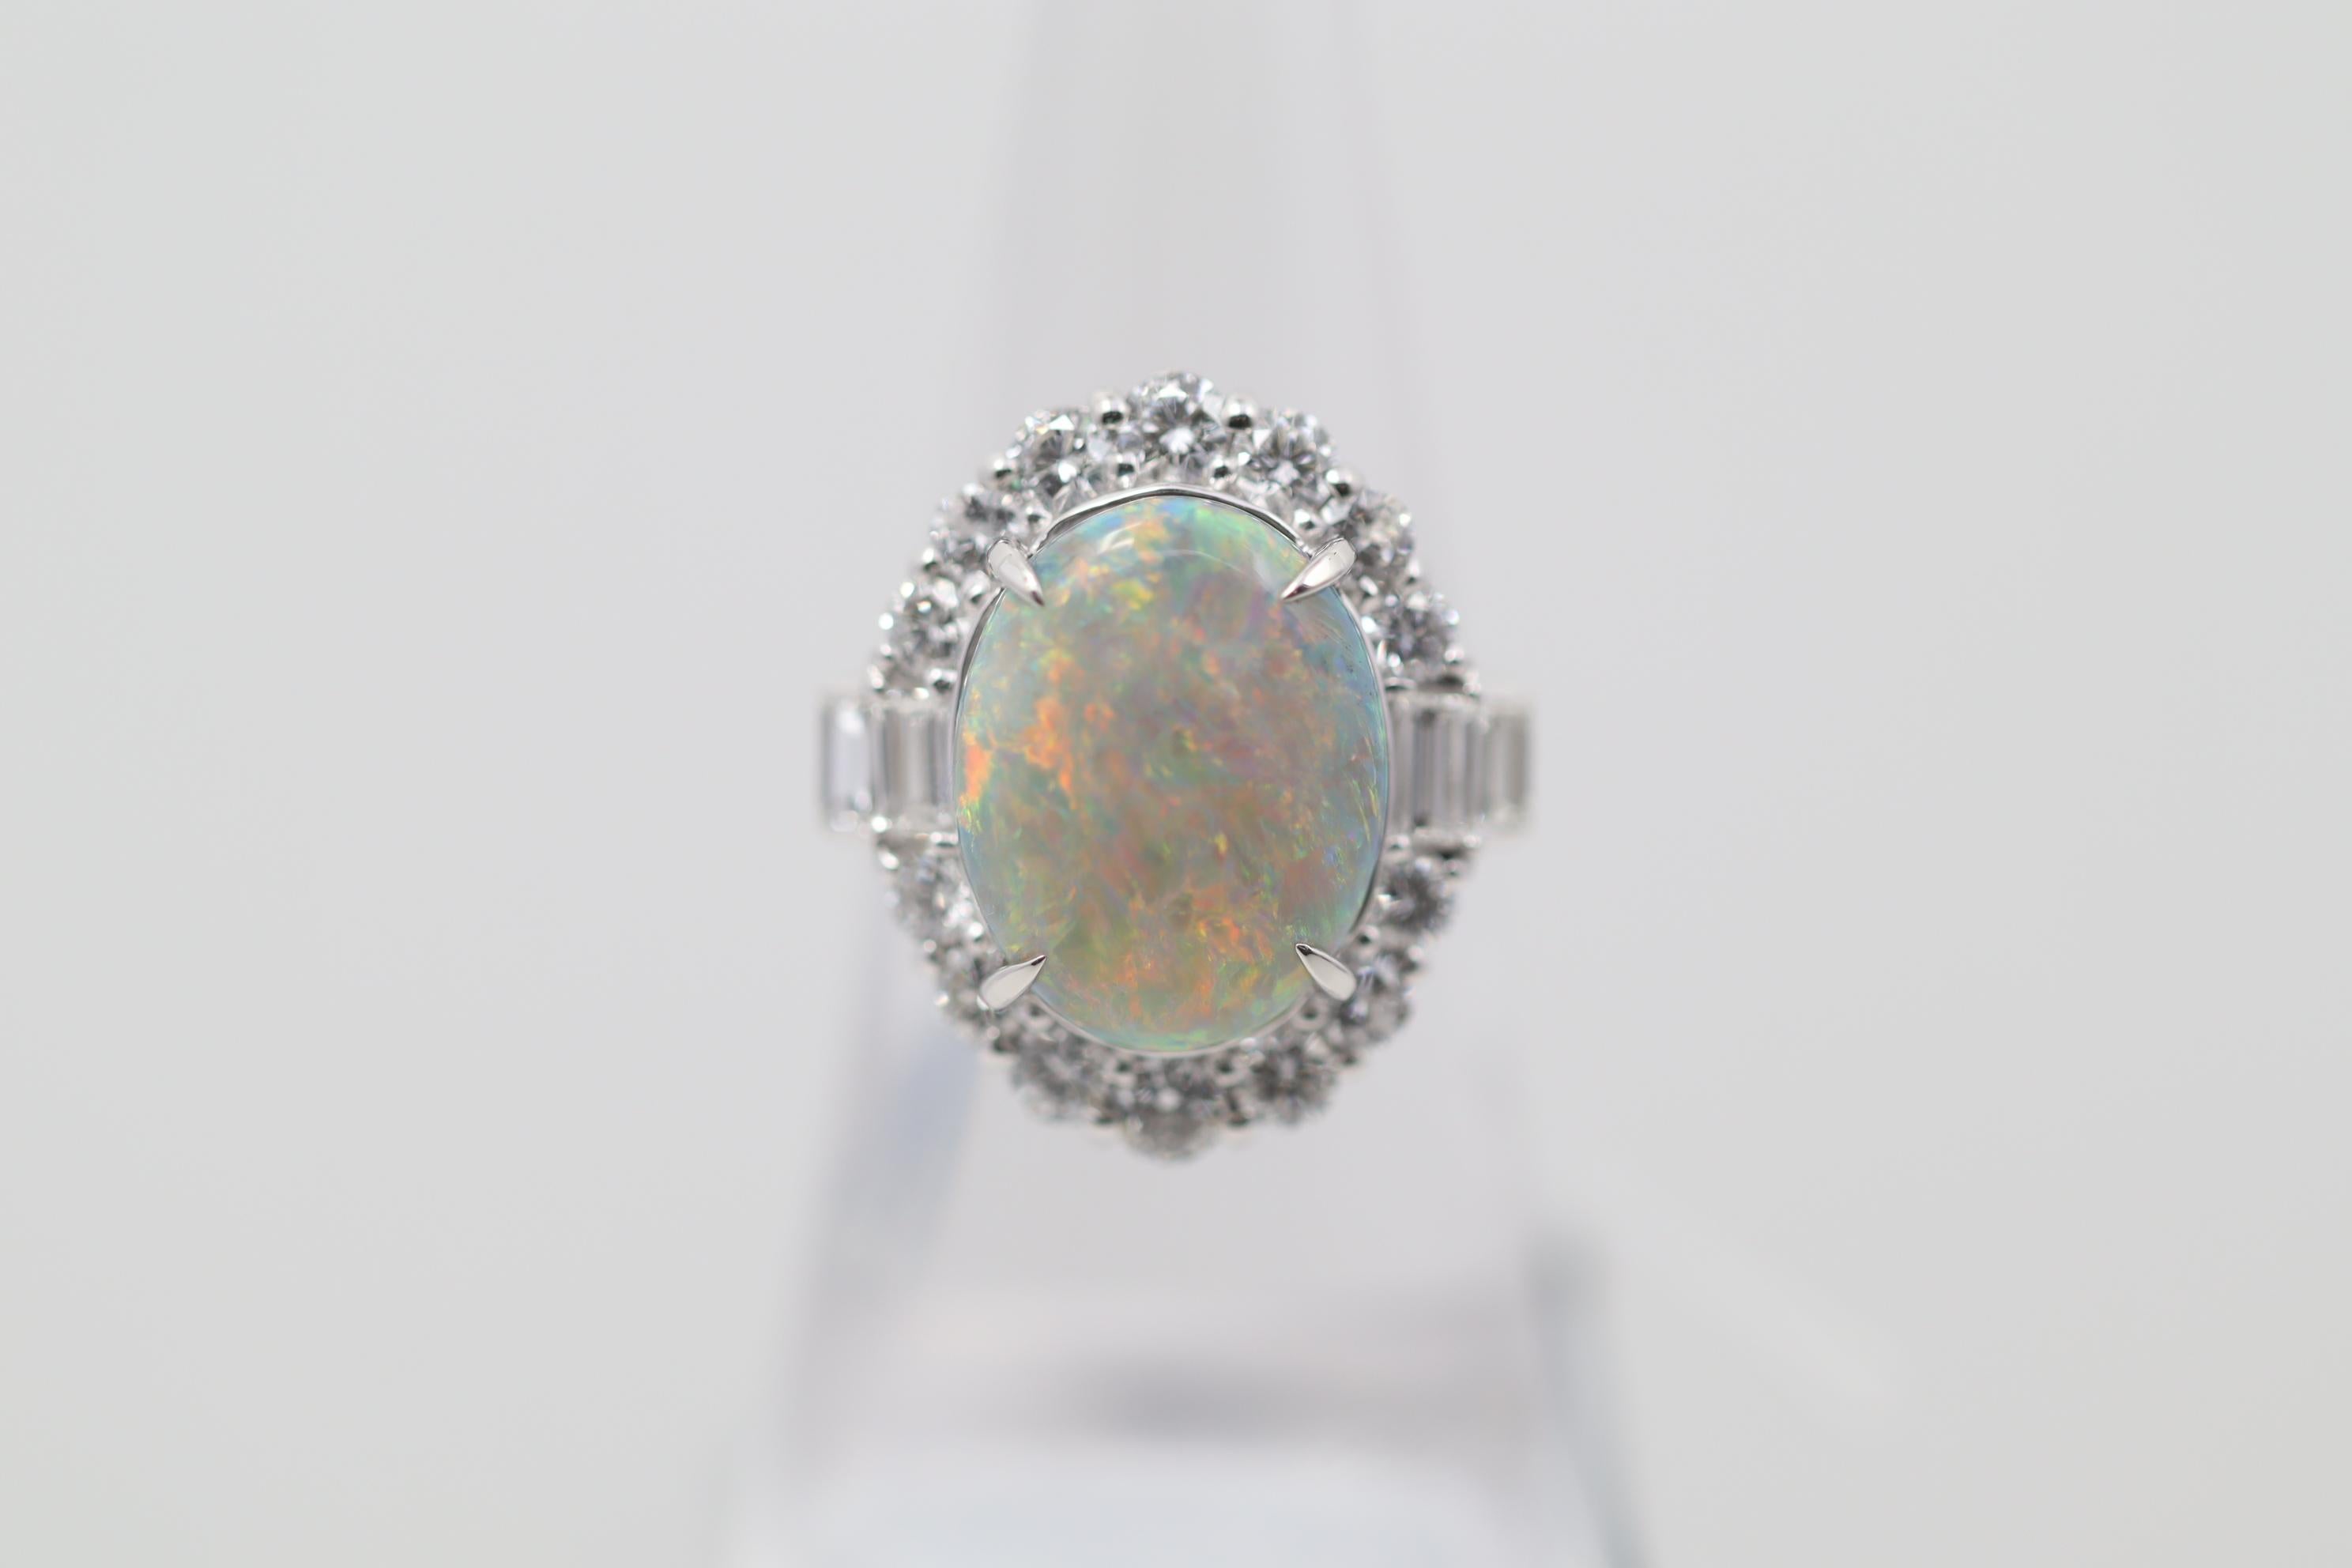 Une exceptionnelle opale noire naturelle provenant de la célèbre région minière de Lightning Ridge, en Australie. L'opale pèse un poids substantiel de 7,38 carats et présente un excellent jeu de couleurs. De l'ensemble de l'opale se trouvent des